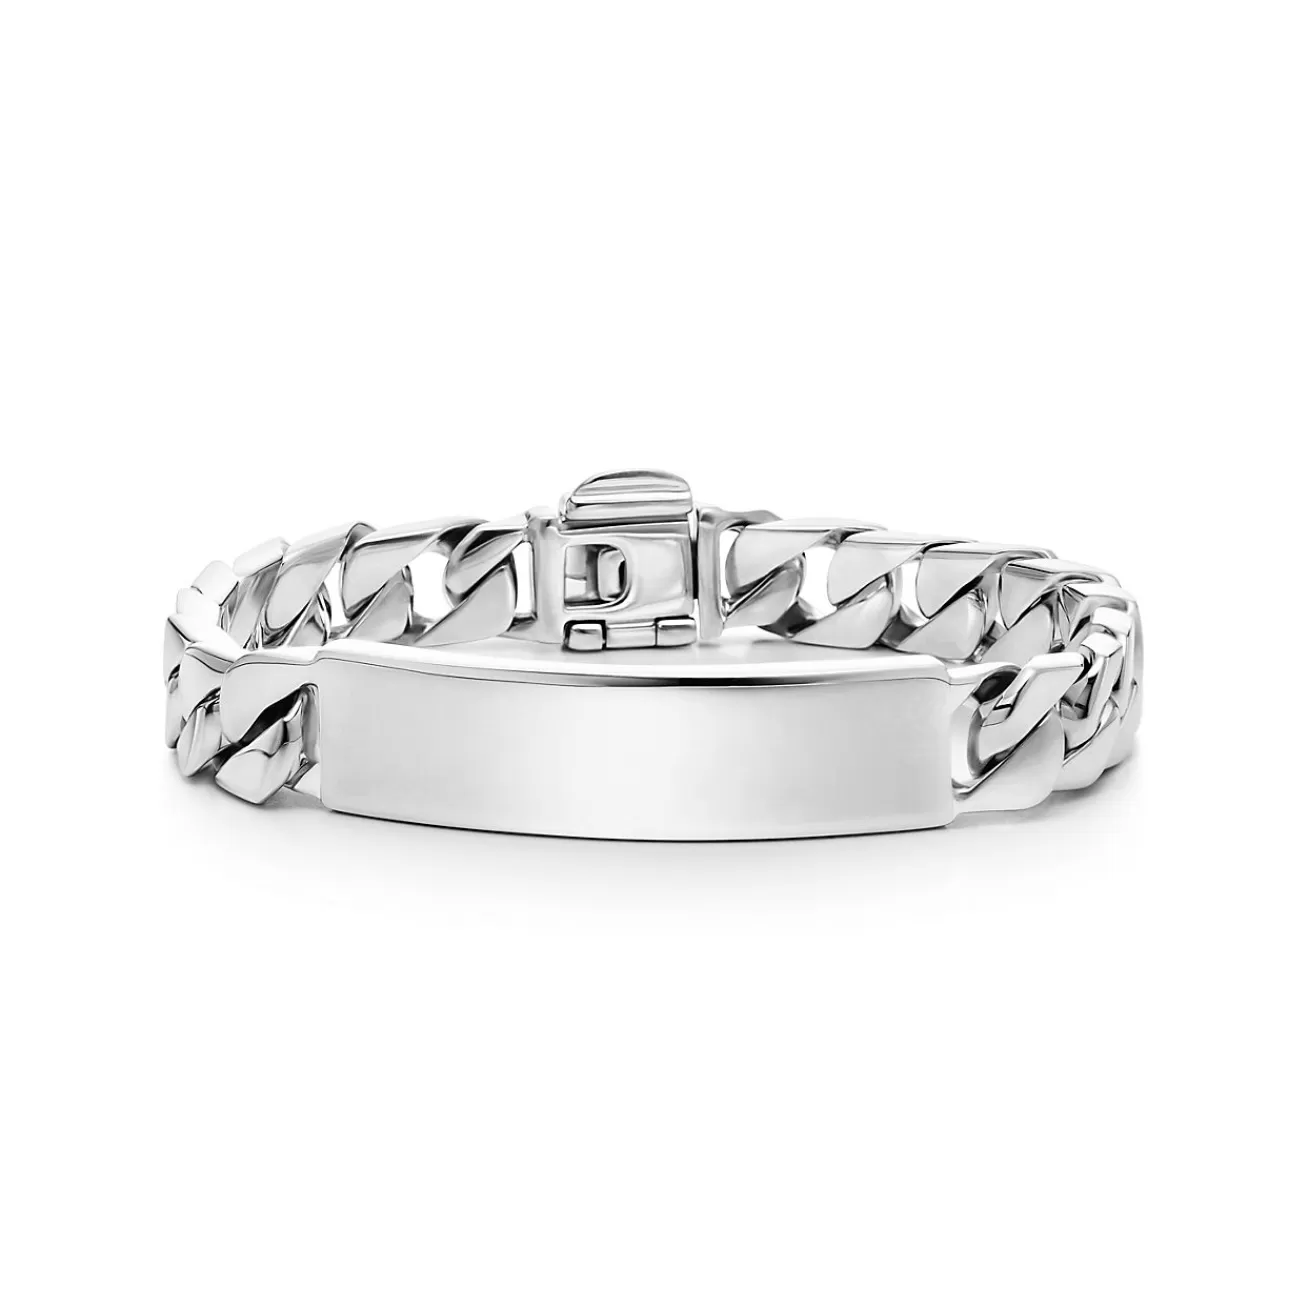 Tiffany & Co. I.D. bracelet in sterling silver, medium. | ^ Bracelets | Bold Silver Jewelry